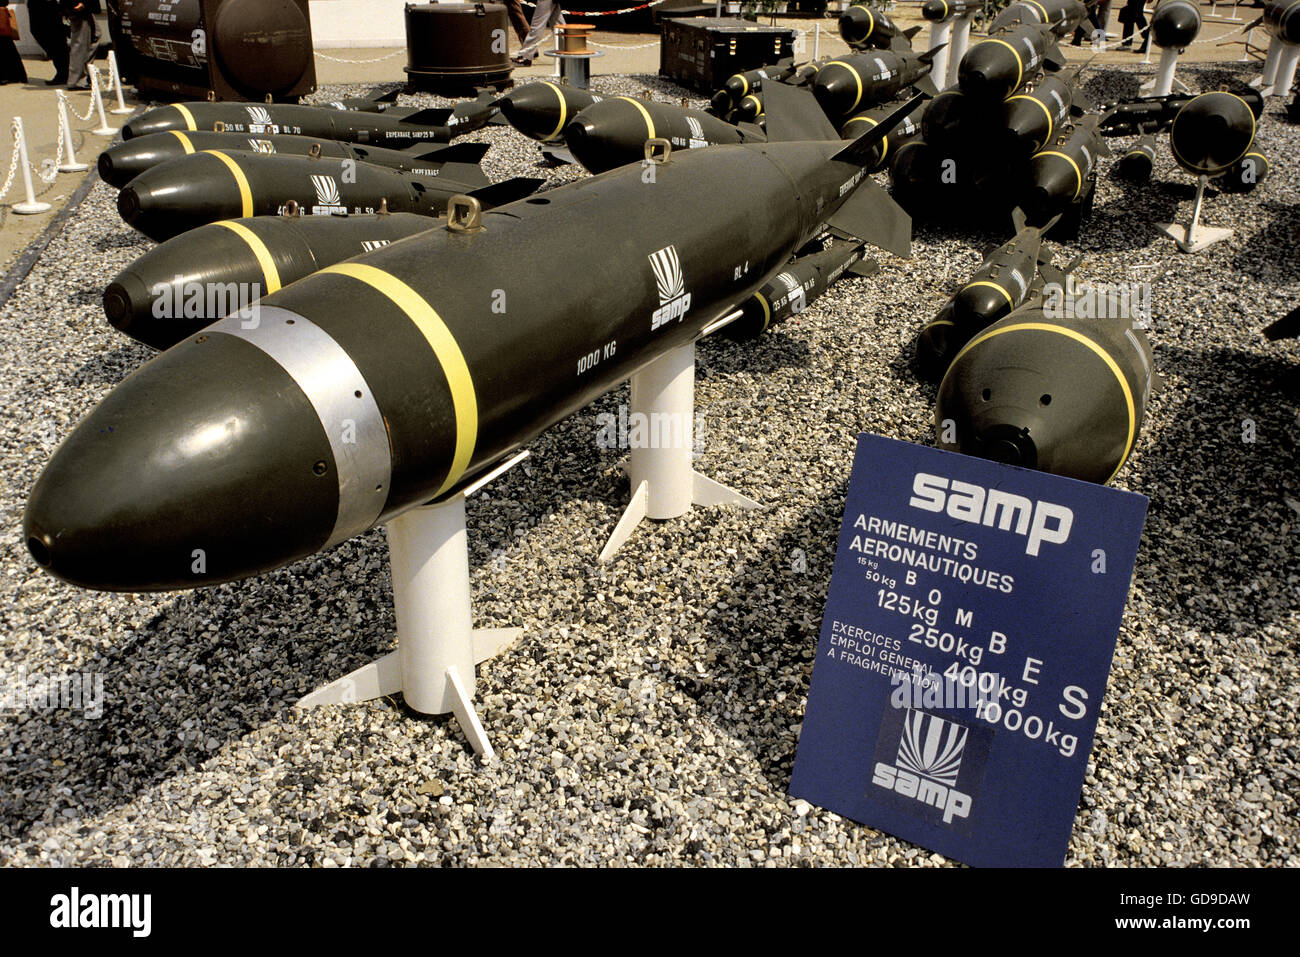 SAMP (Societe des Atelier Mecaniques) bomb munitions Stock Photo